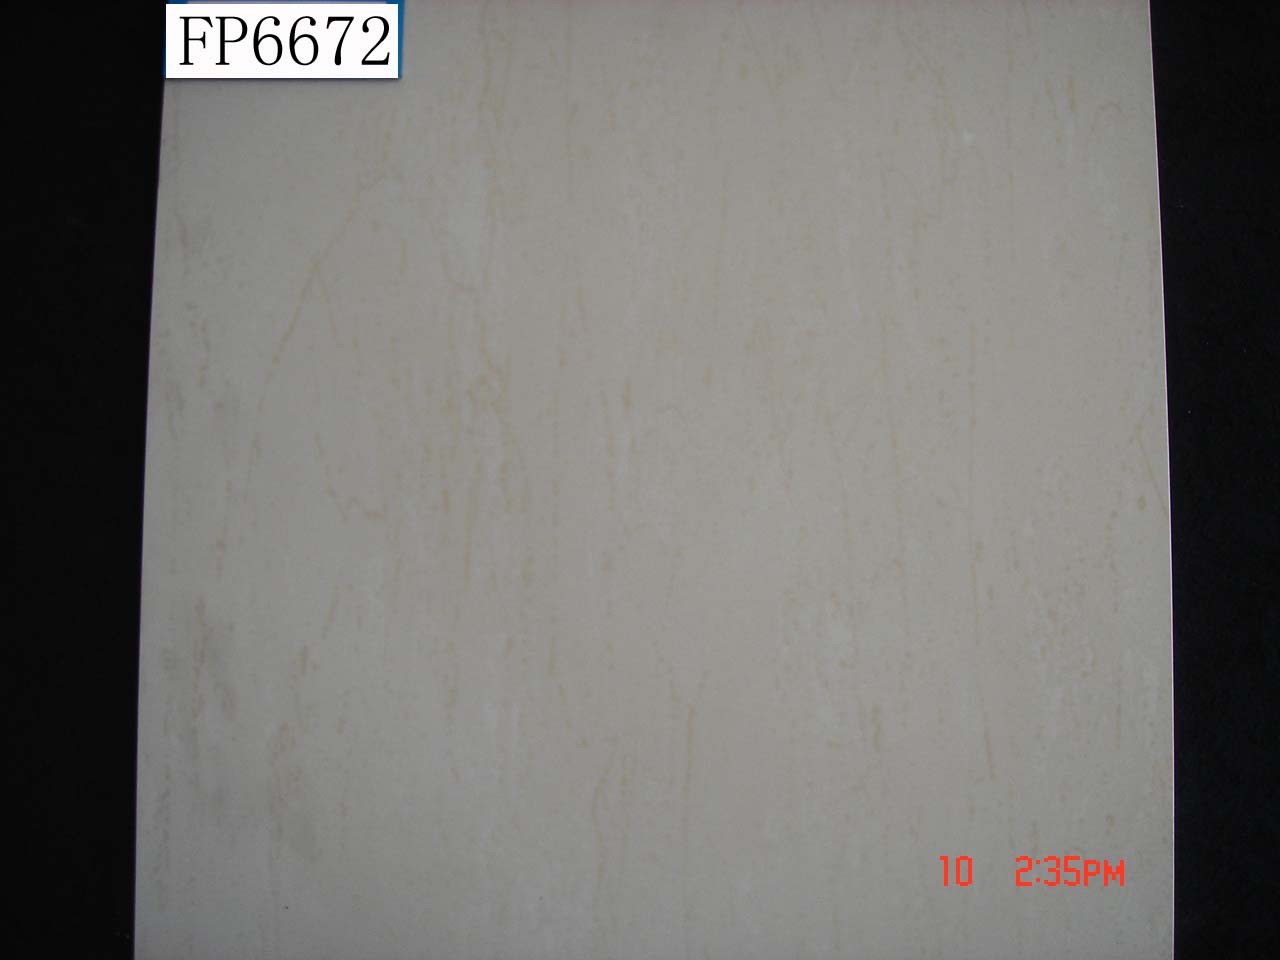 soluble salt tiles manufacturer FP6672